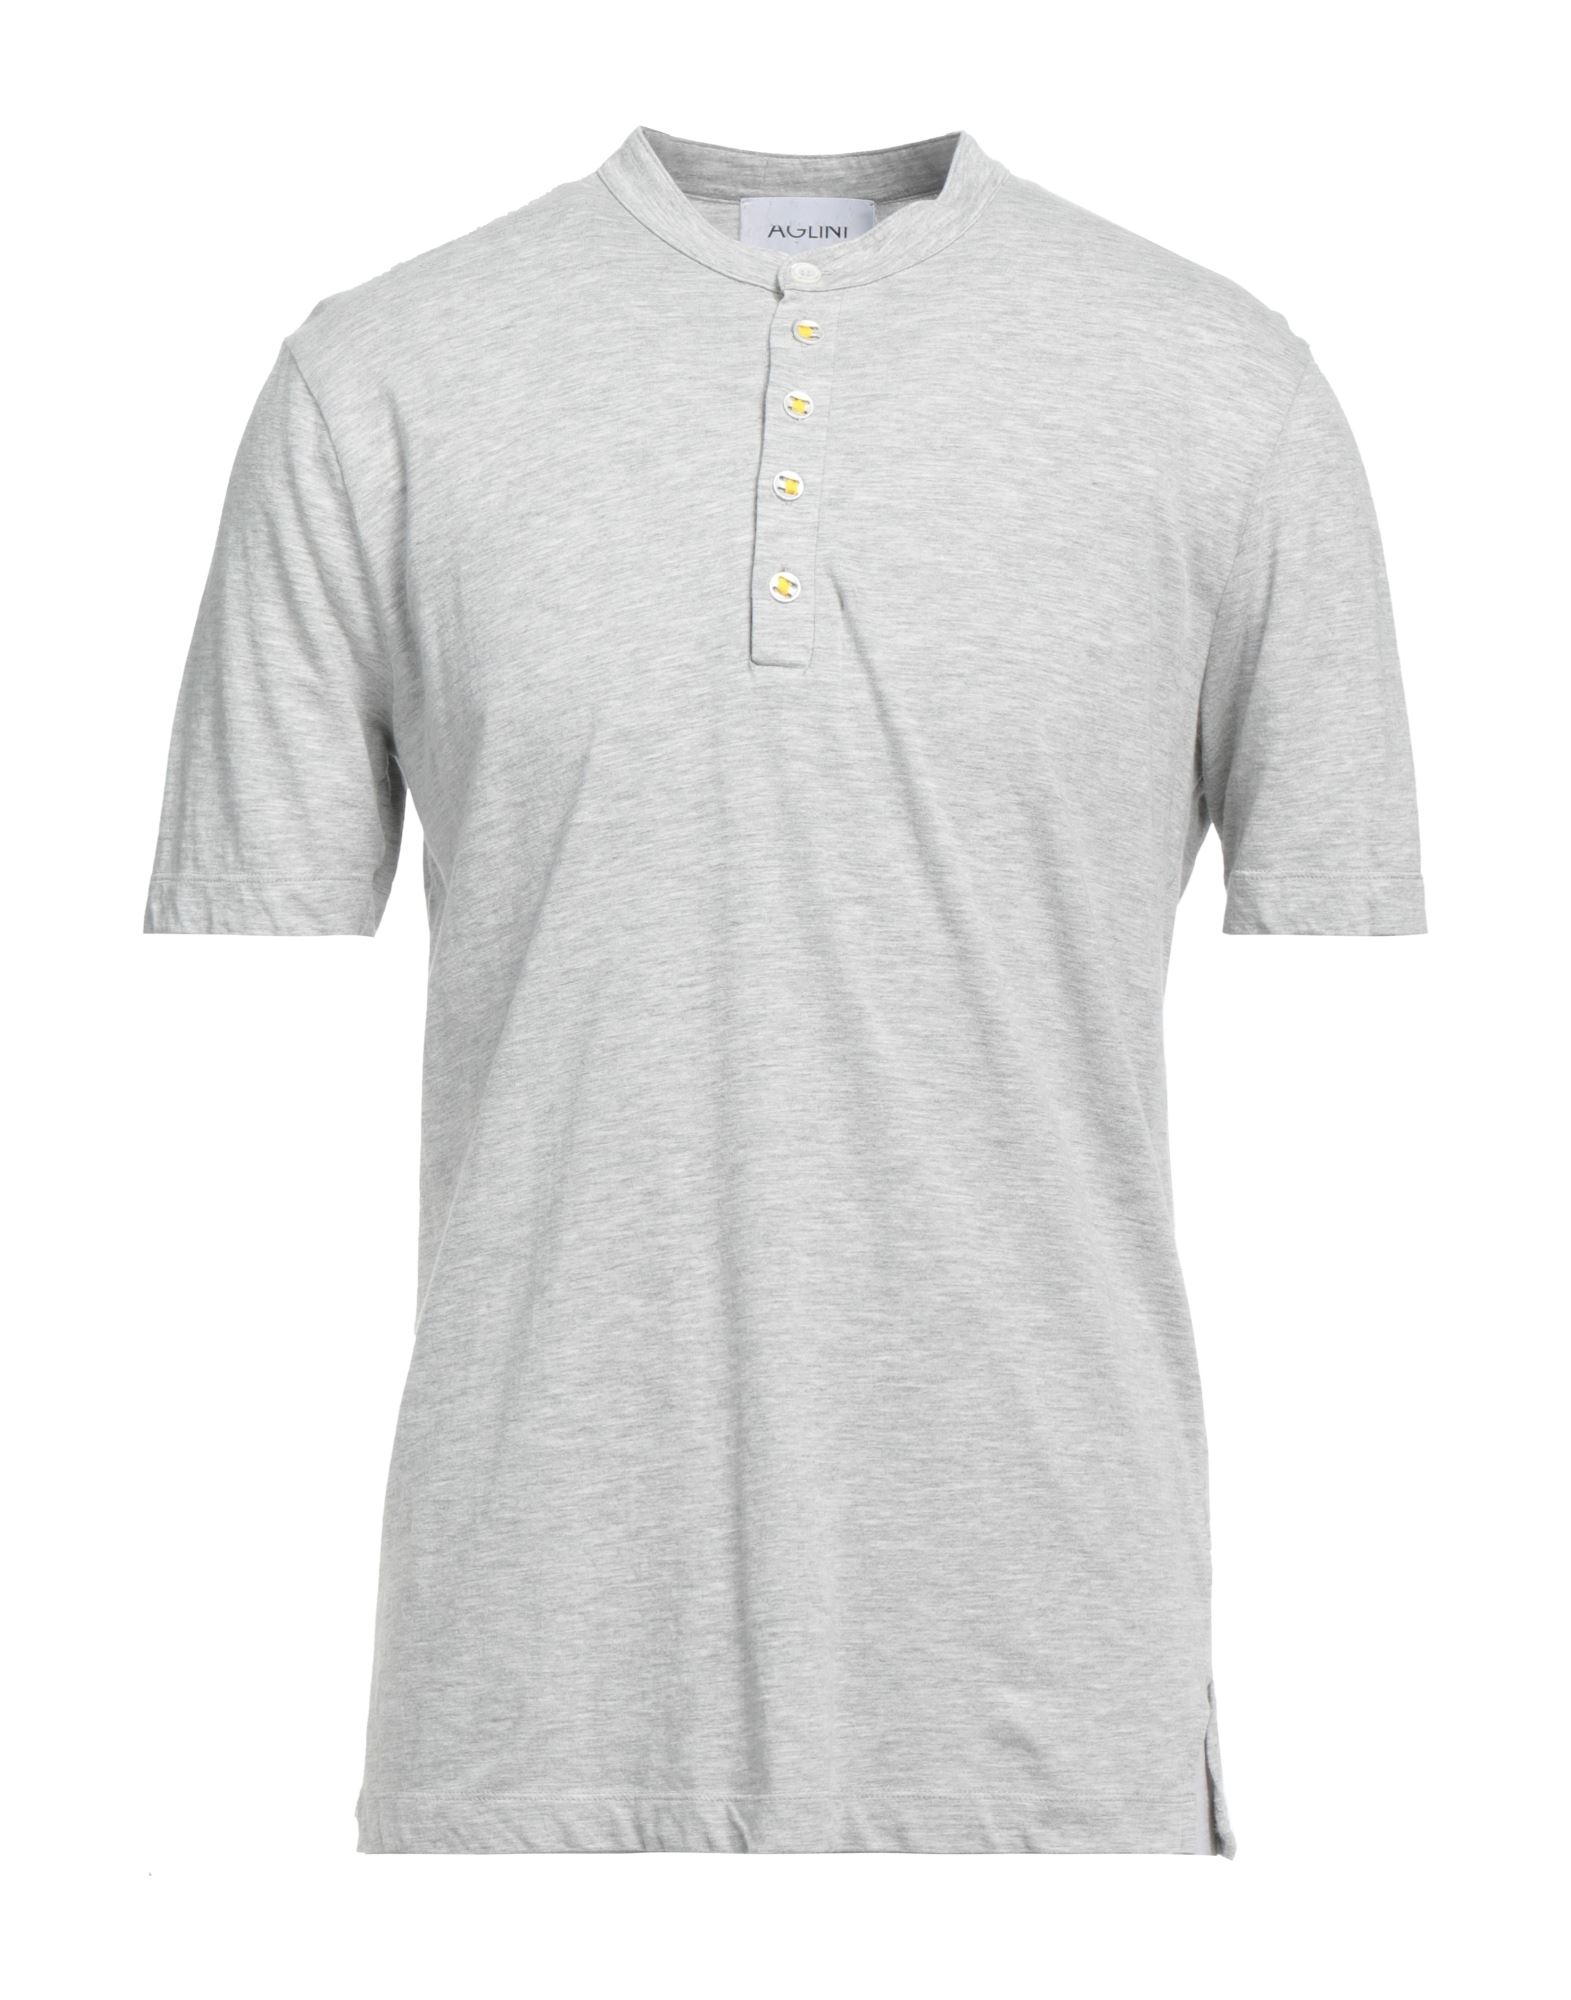 Aglini T-shirts In Light Grey